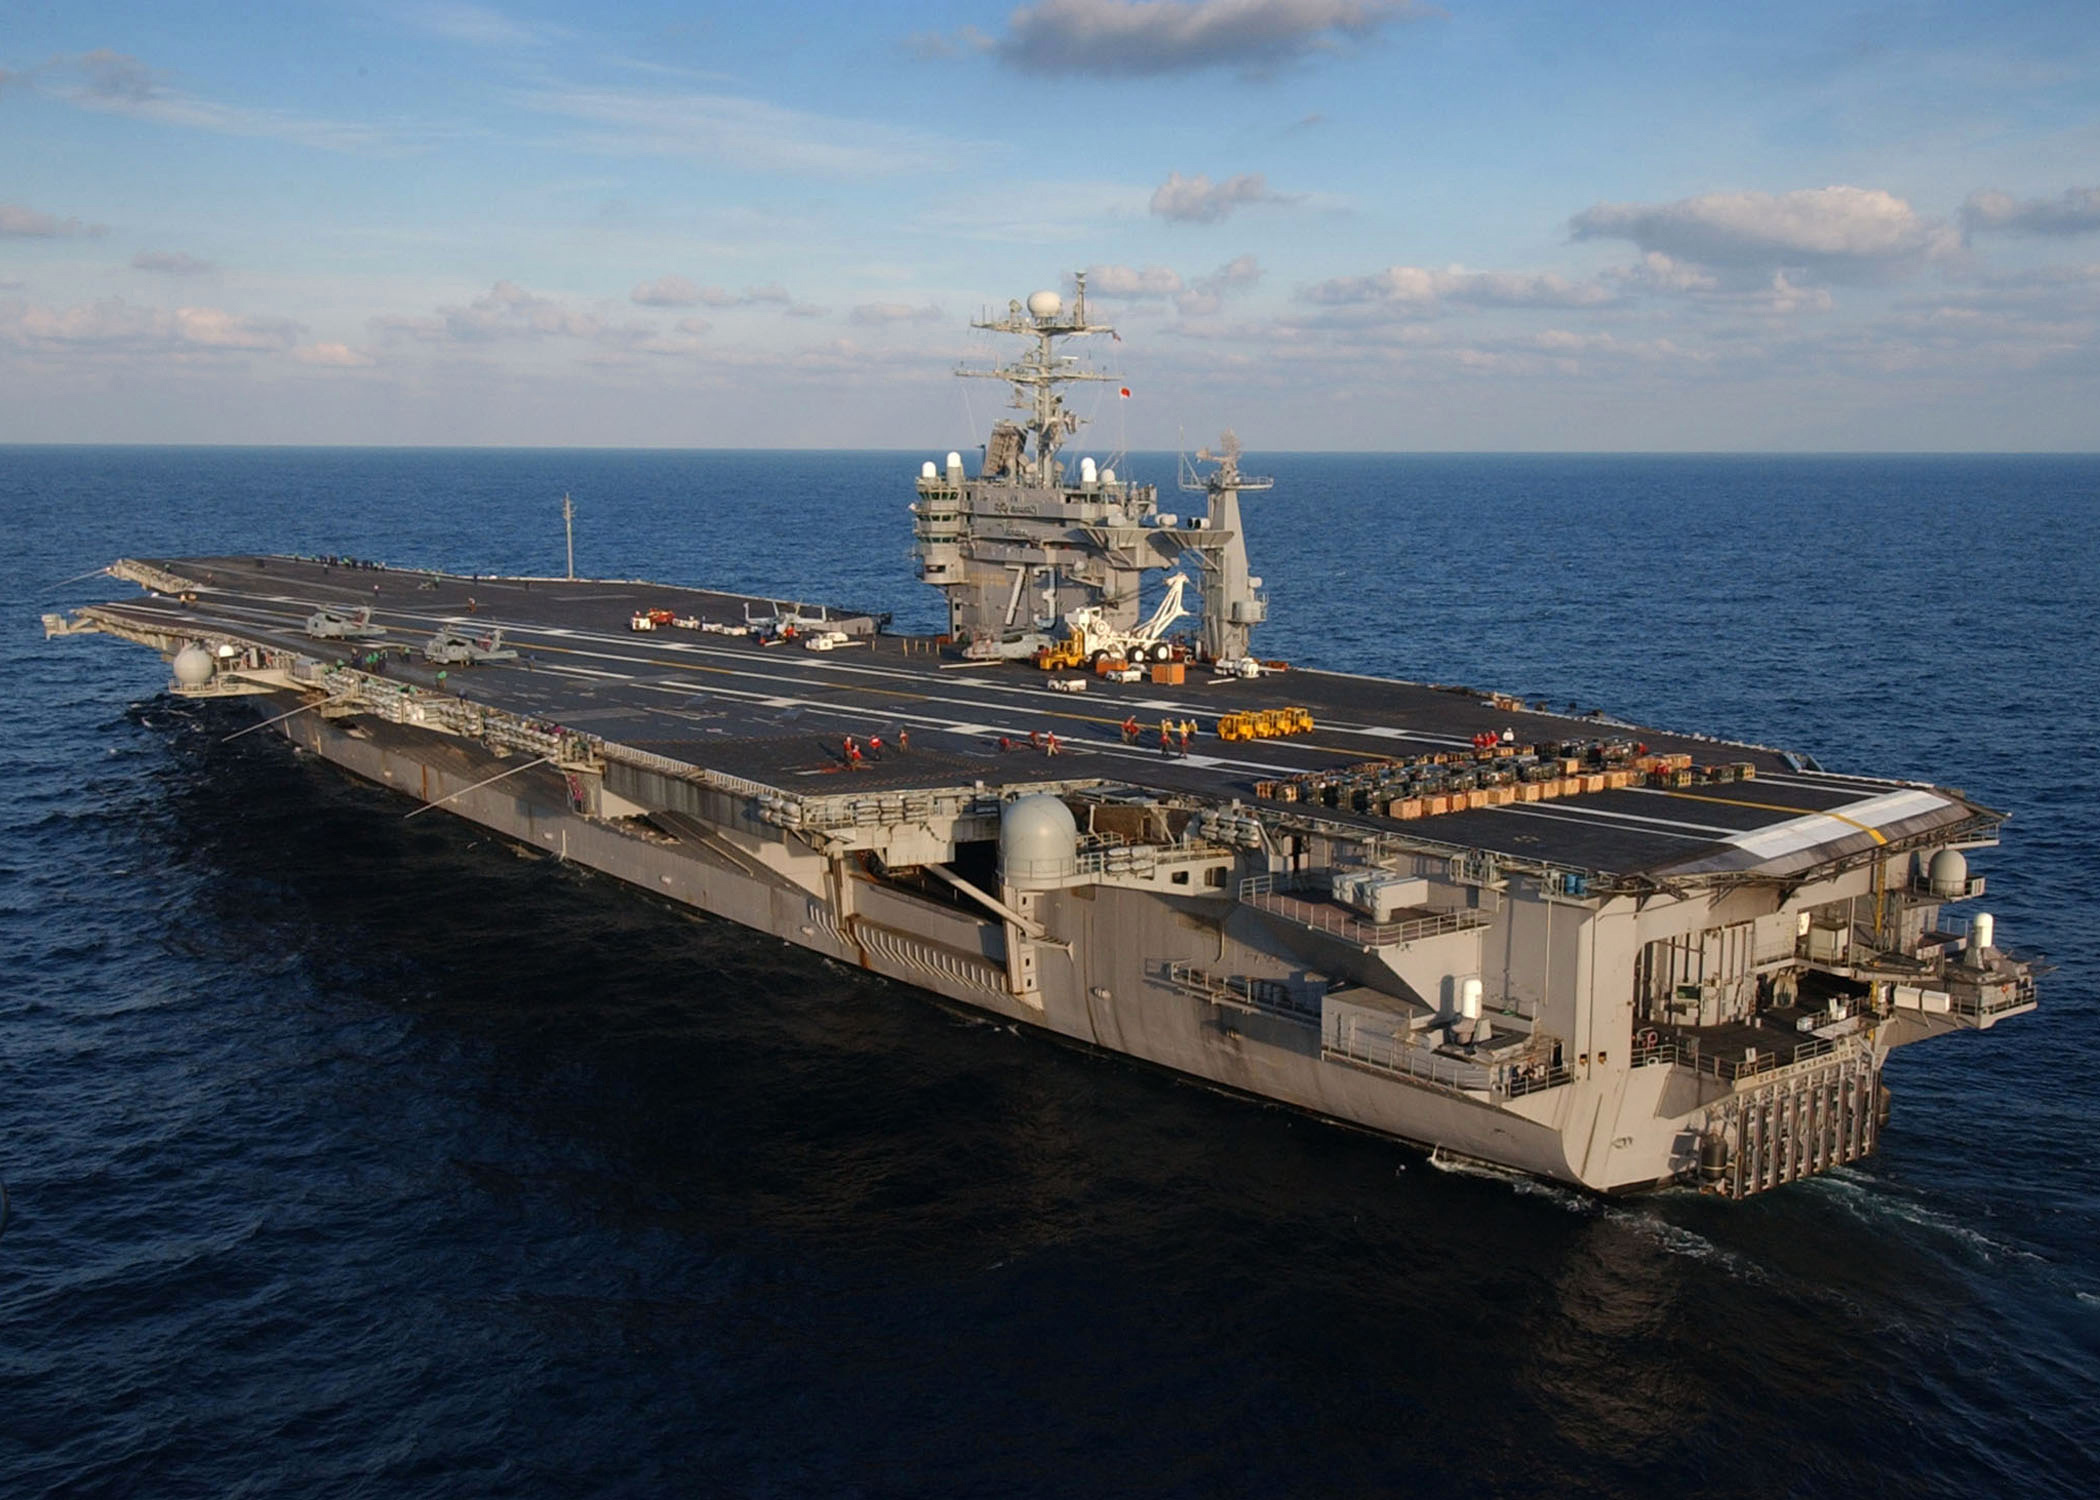 военно-морской флот, авианосцы, USS George Washington - обои на рабочий стол